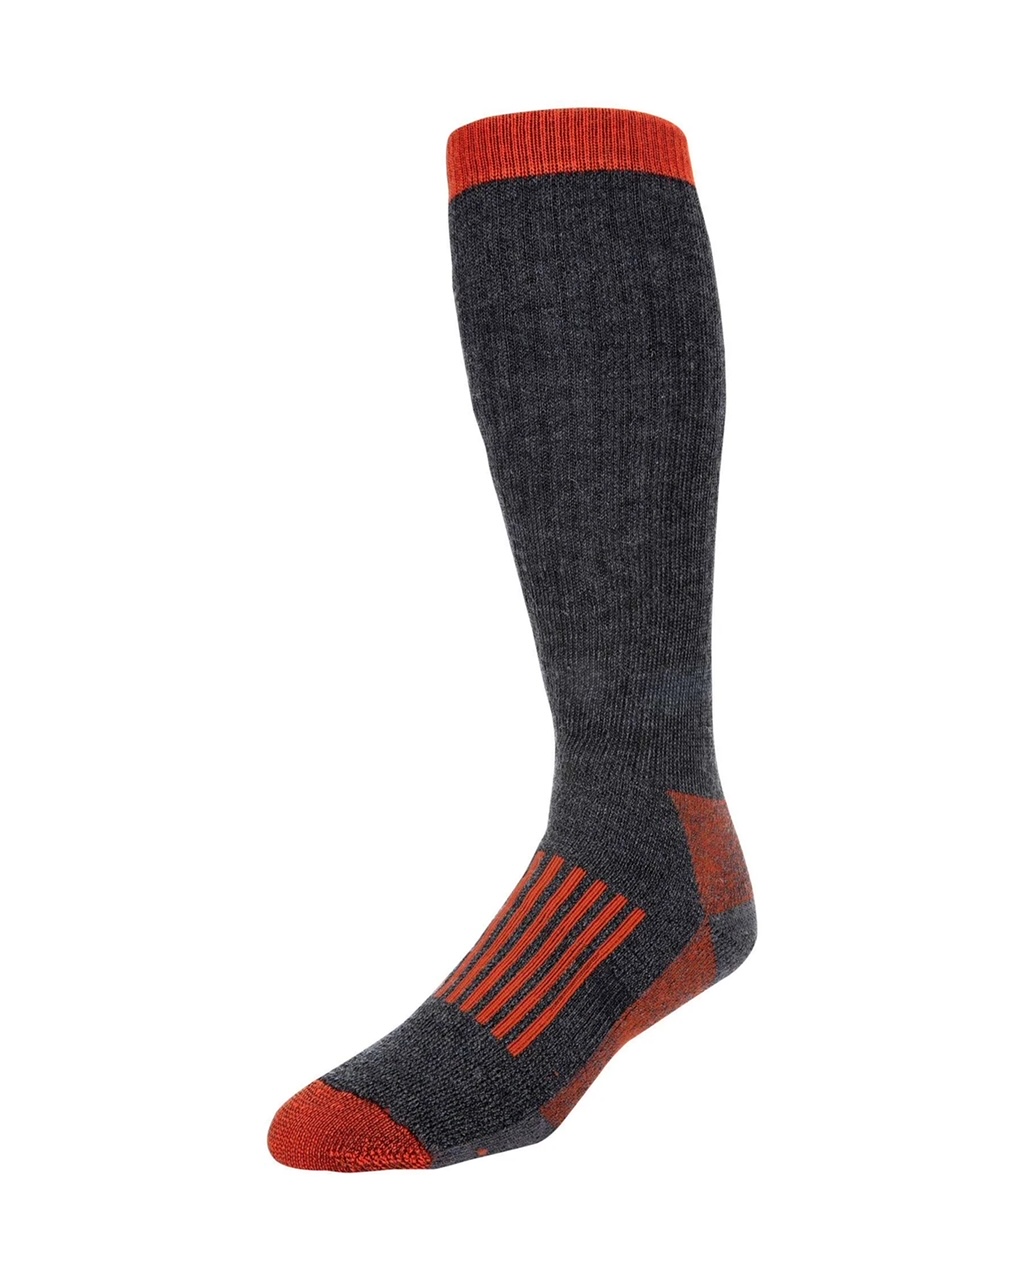 Men's Merino Thermal OTC Socks